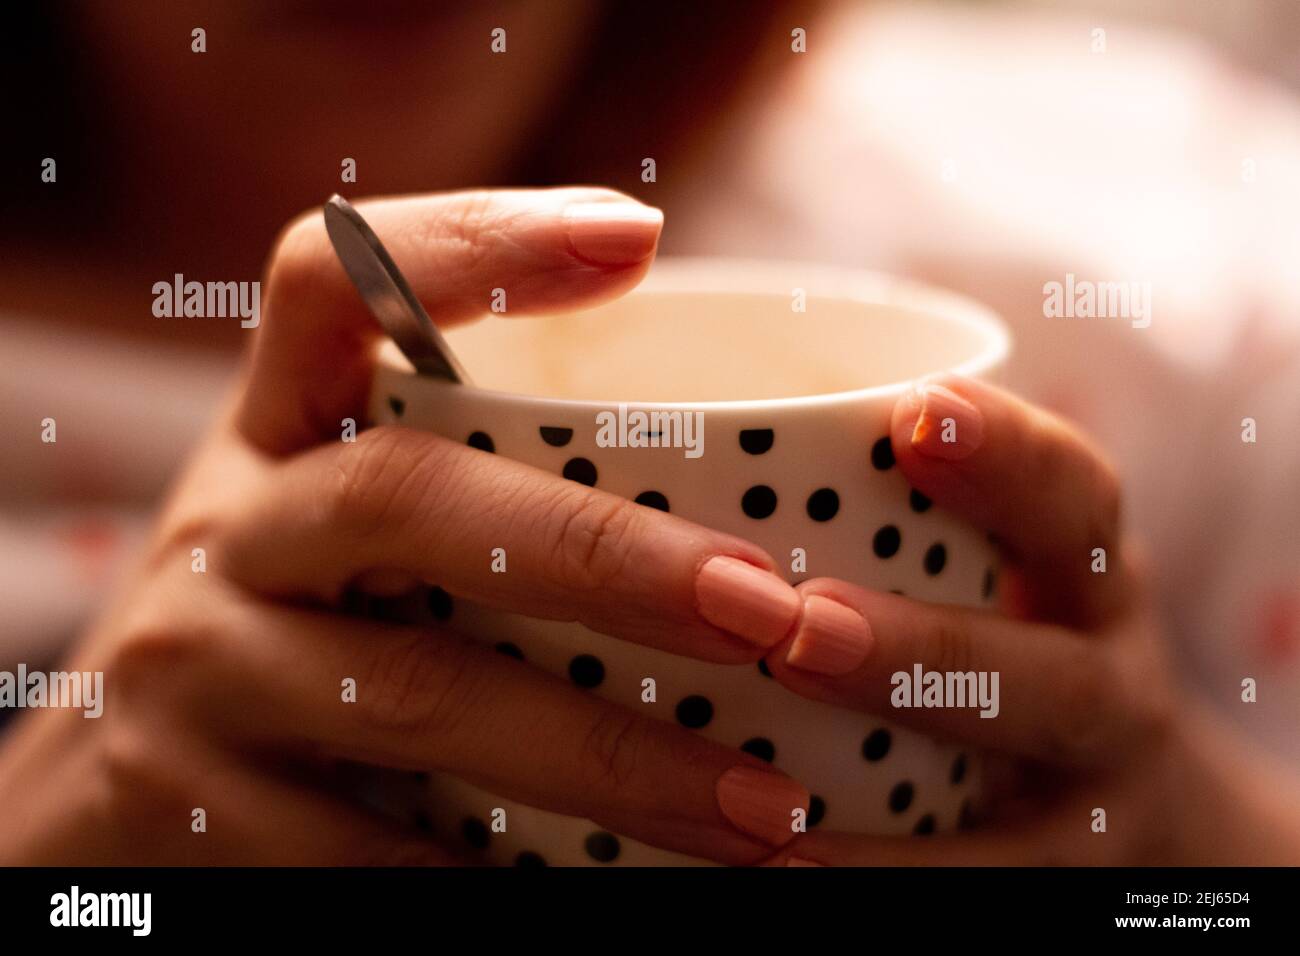 Dettaglio delle mani di una donna che tiene un bianco tazza in porcellana con puntini neri contenente una bevanda calda Foto Stock